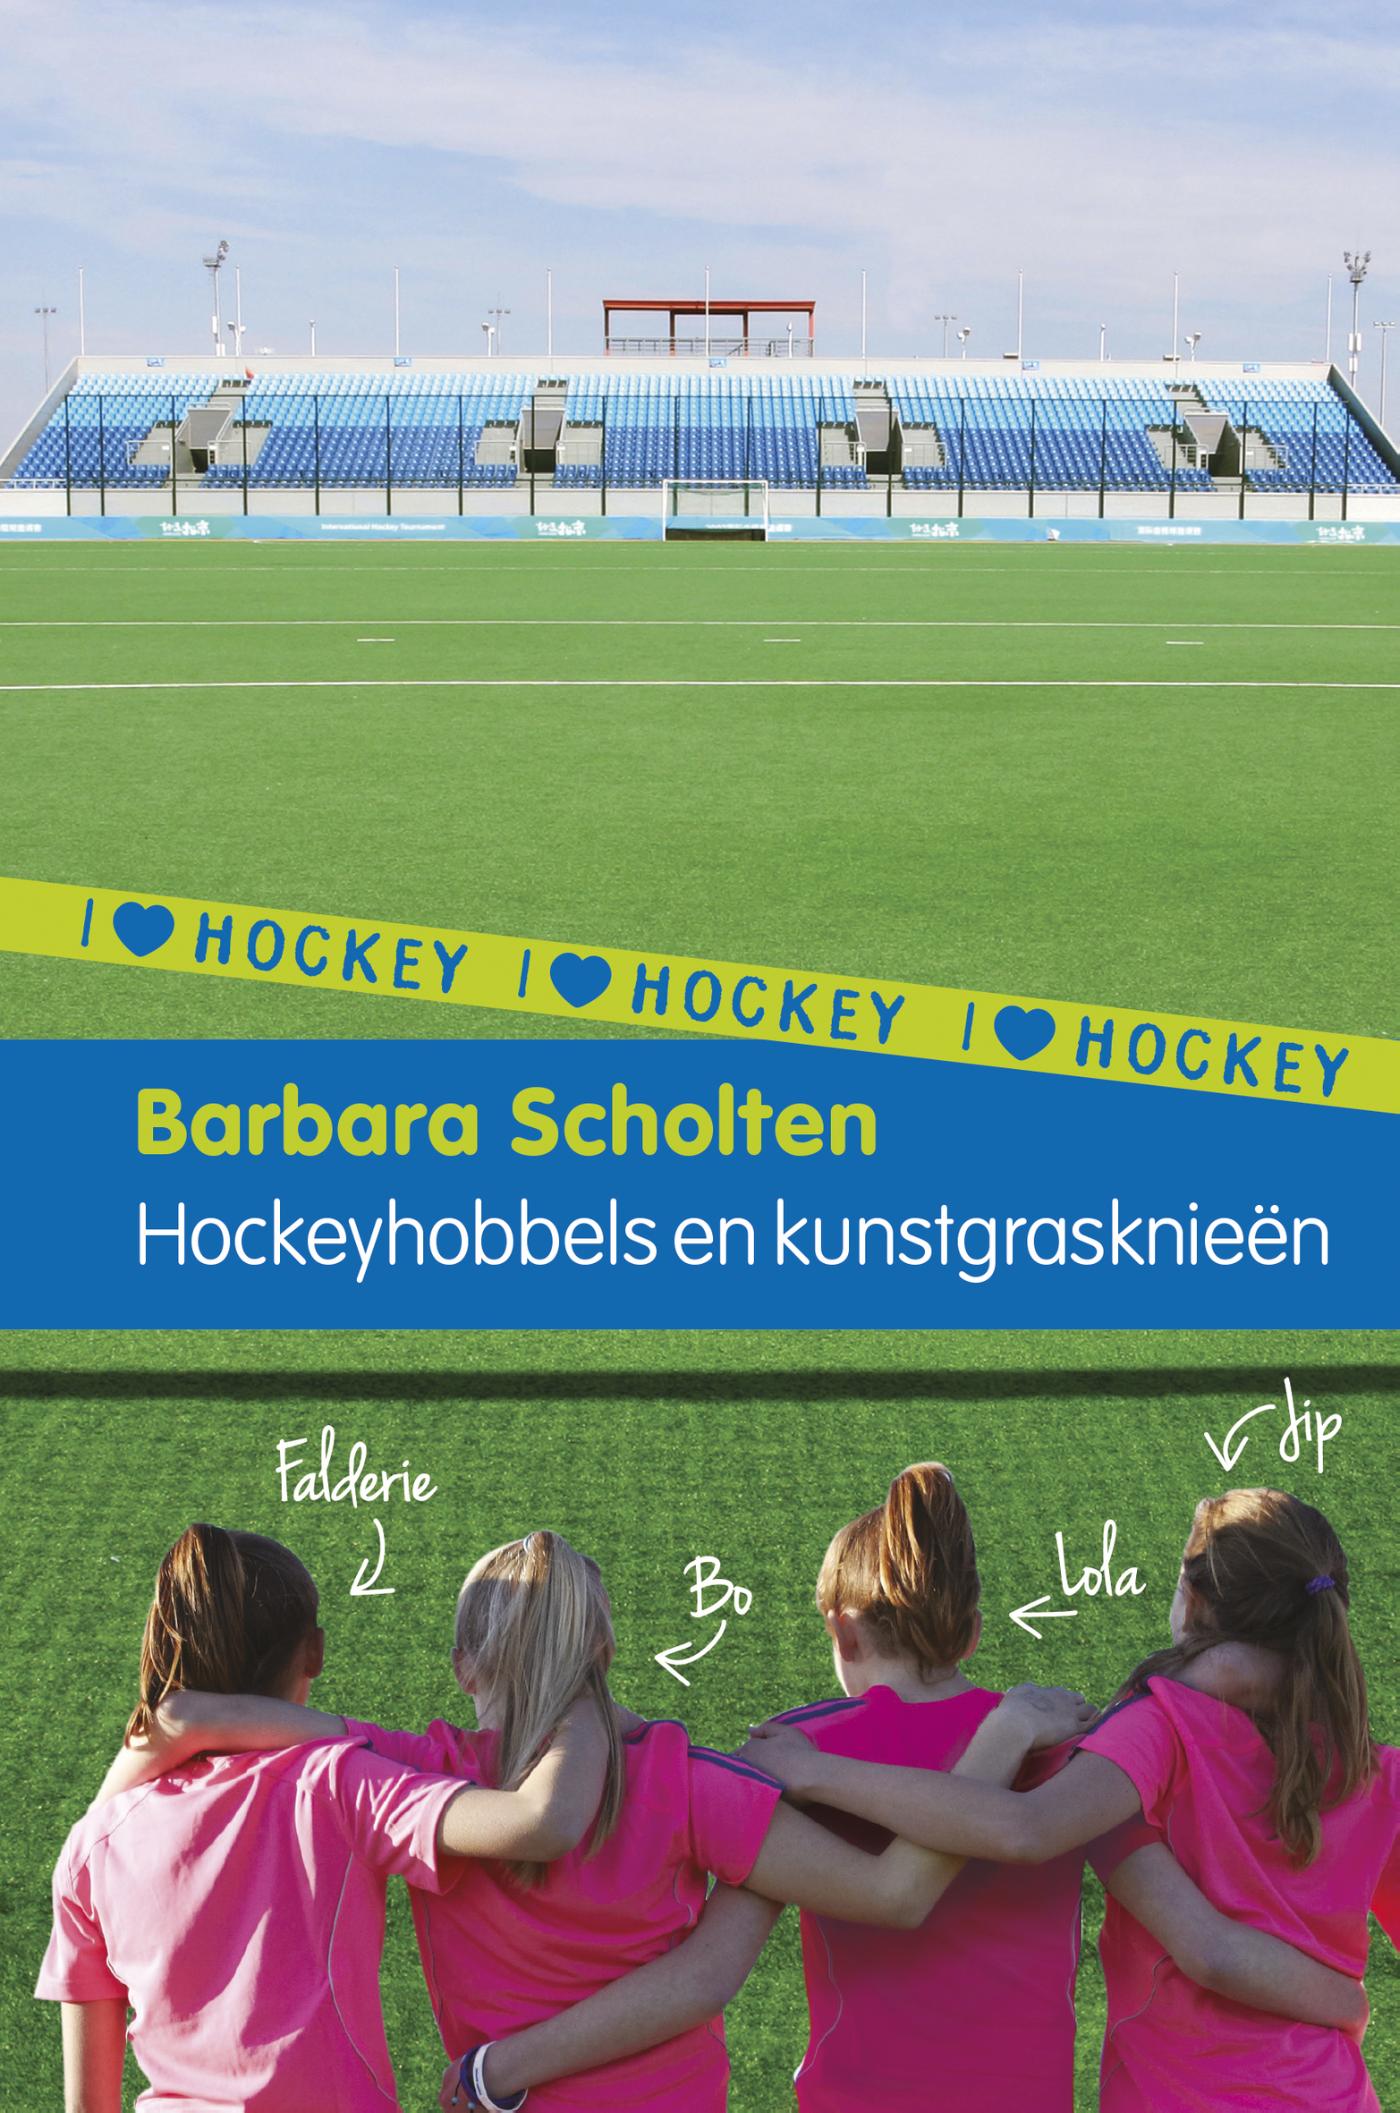 Hockeyhobbels en kunstgrasknieën (Ebook)